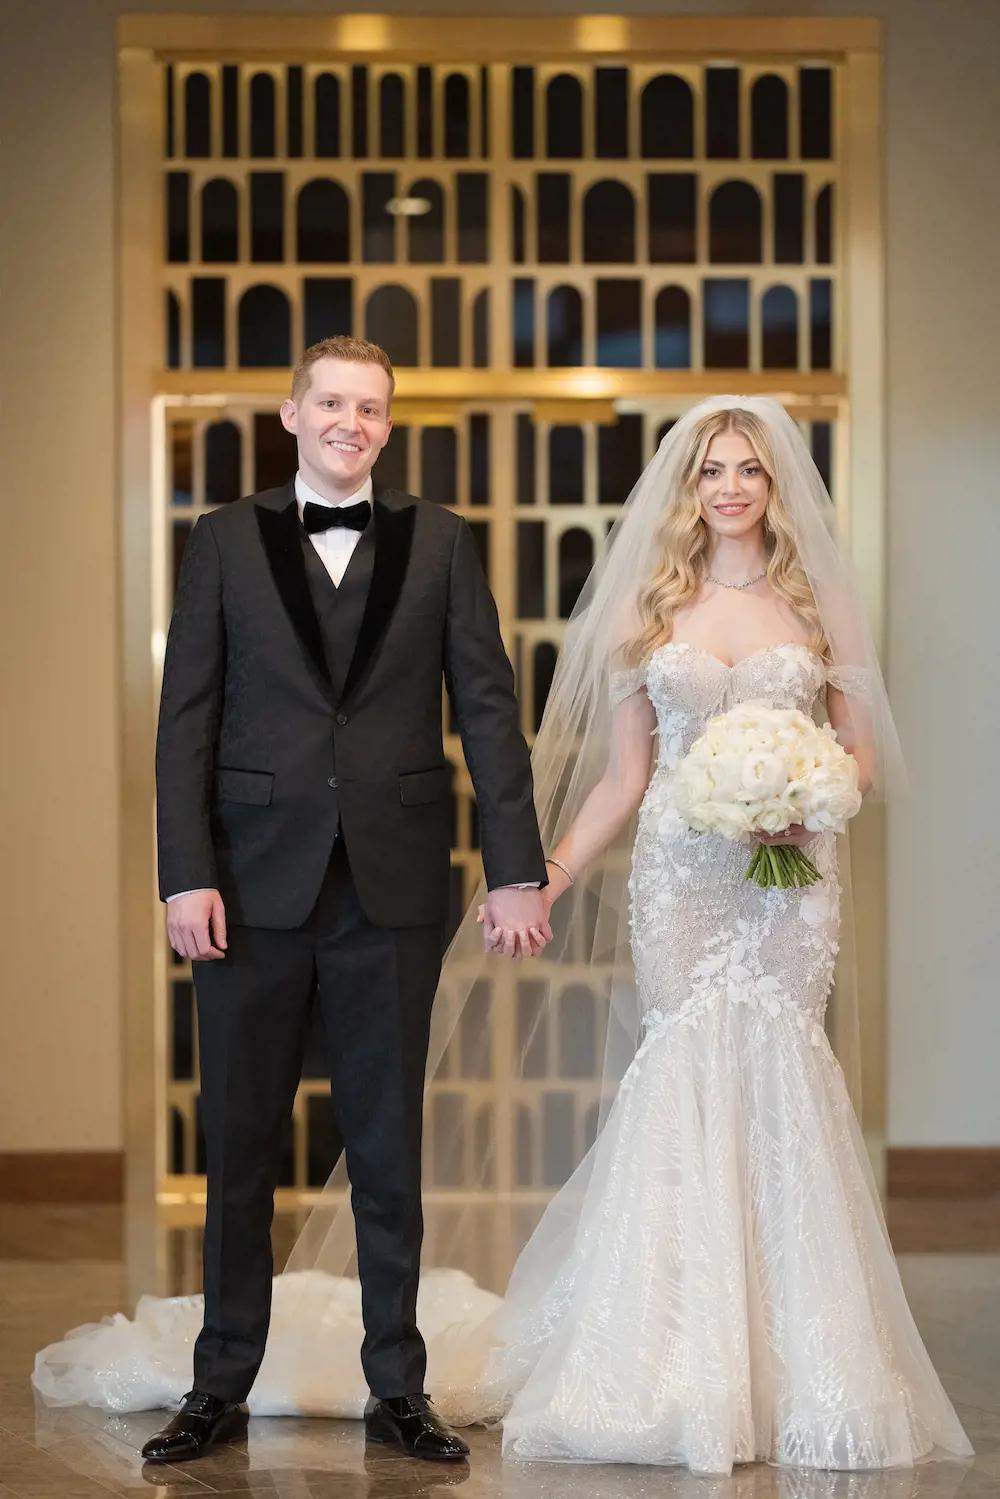 Morgan Marries Sam Wearing Berta at Glamorous Vegas Wedding. Desktop Image